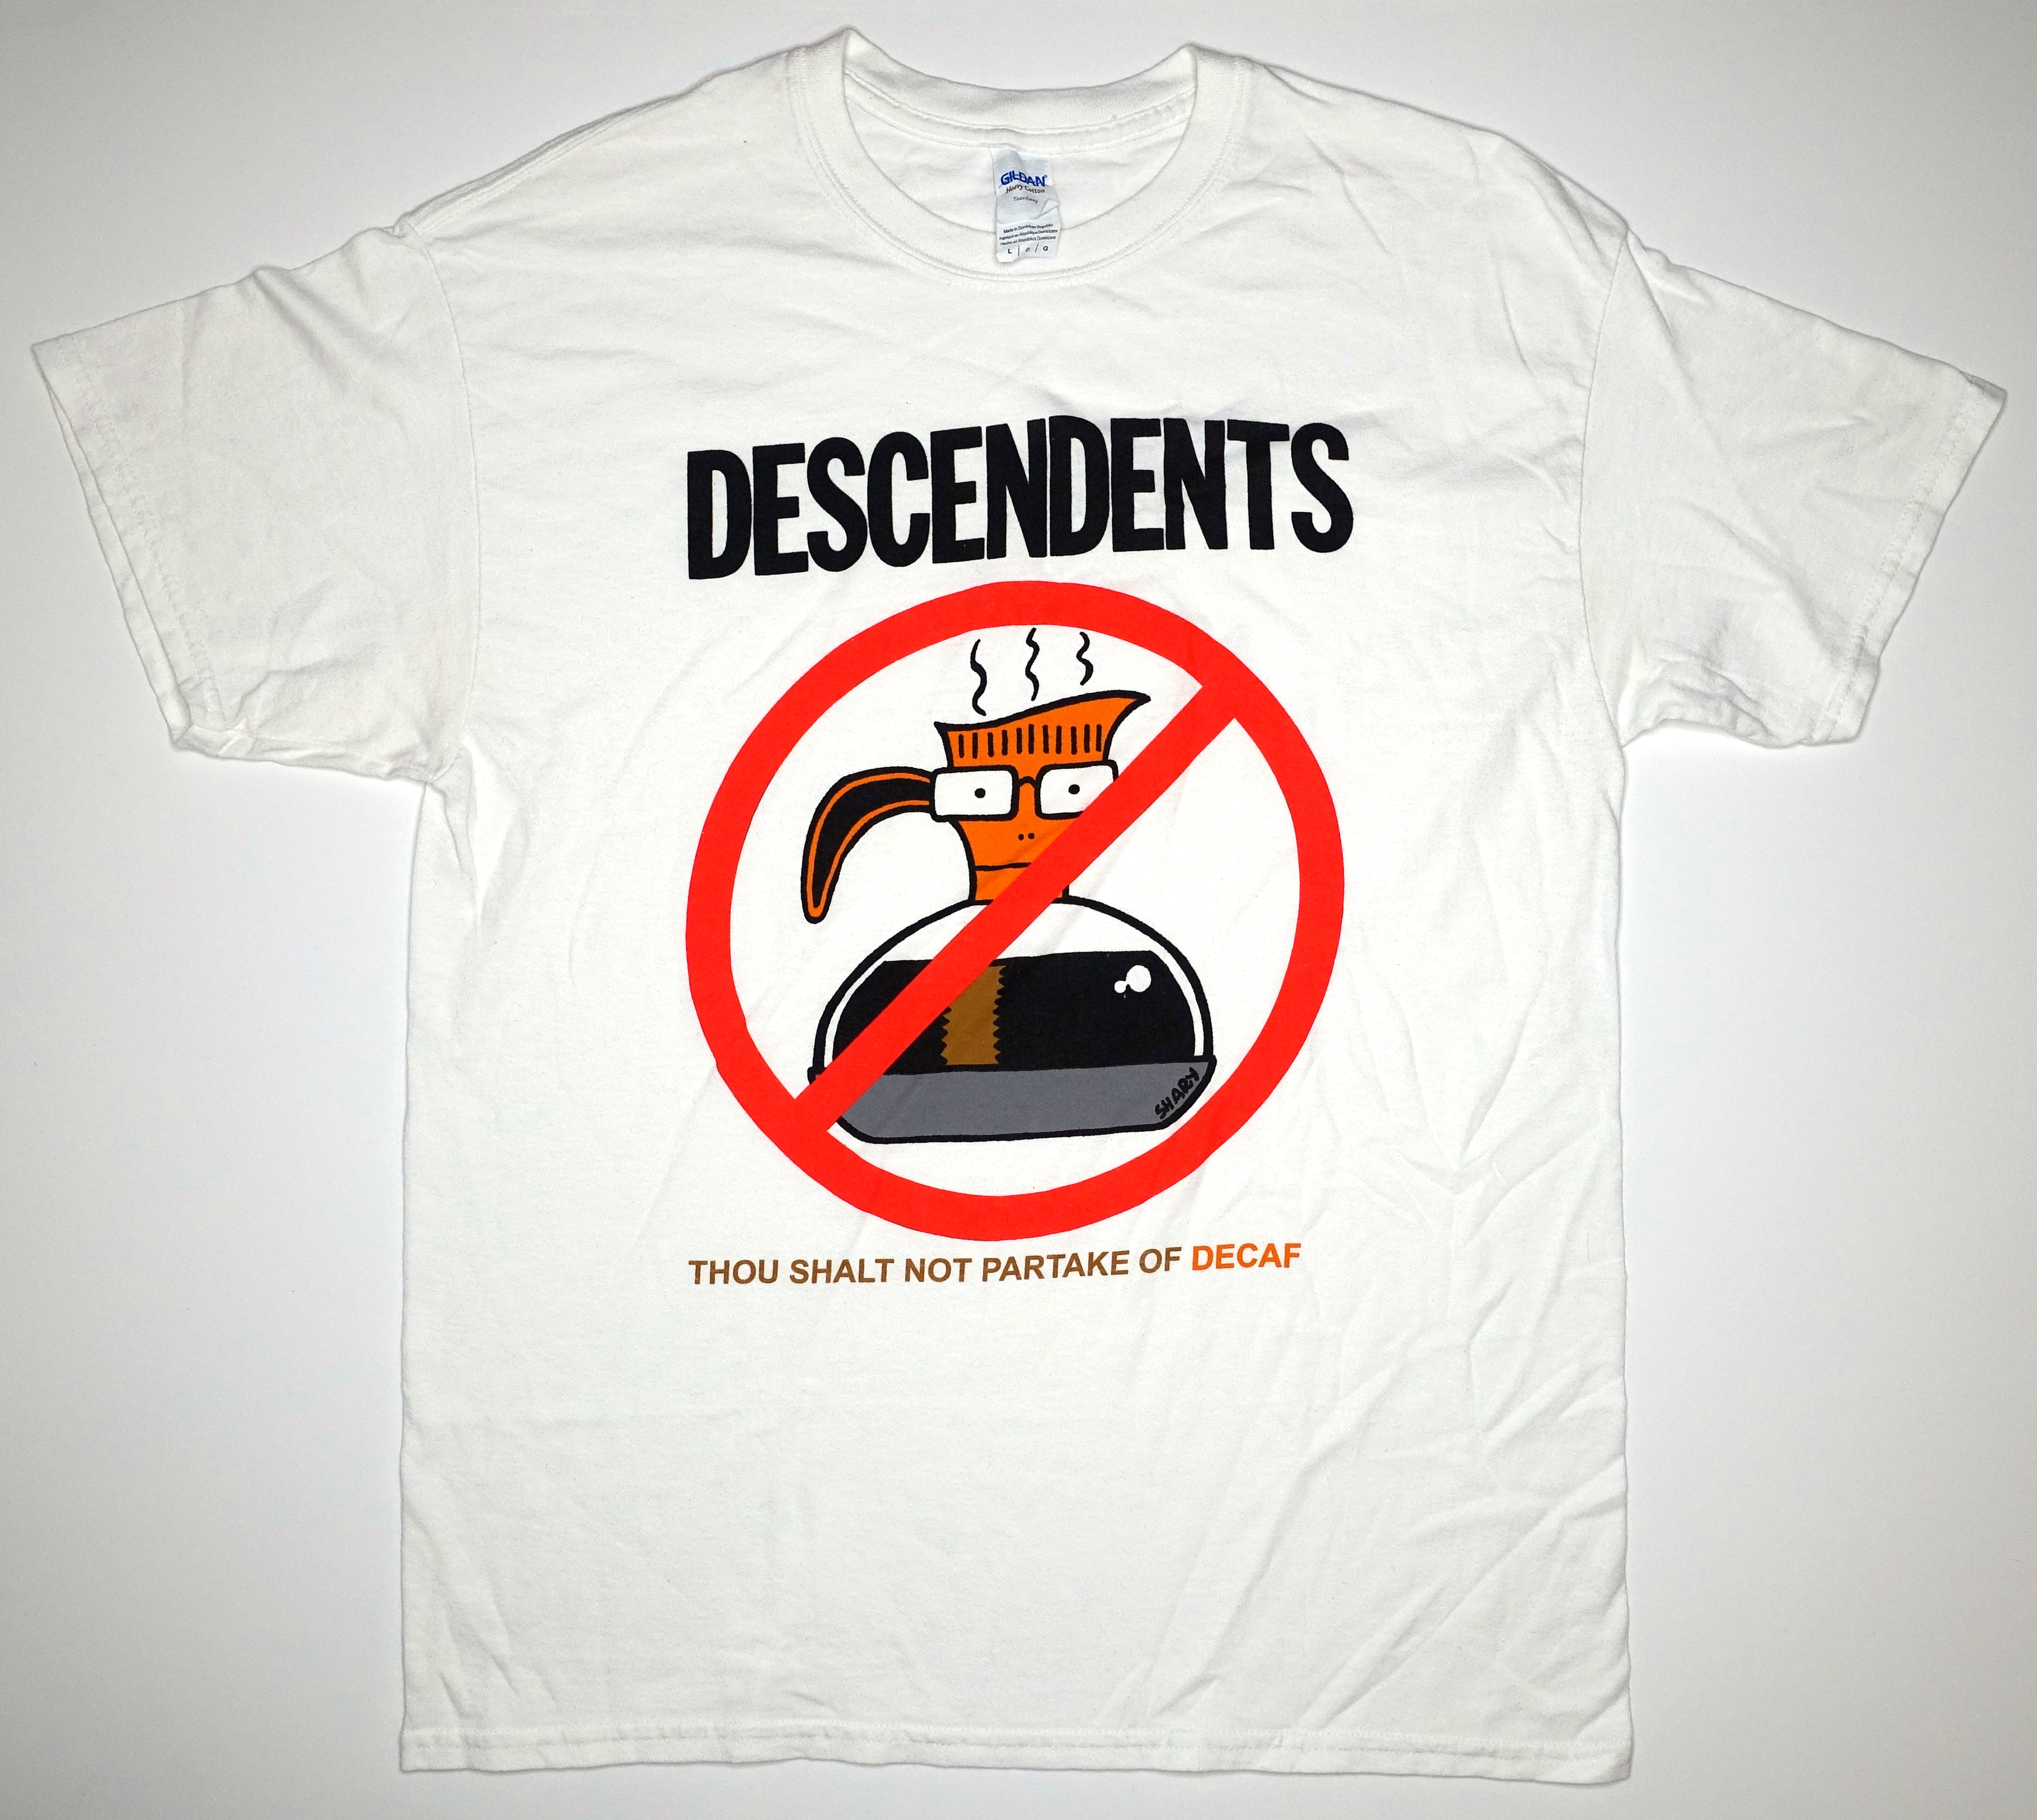 Descendents - Thou Shalt Not Partake Of Decaf Shirt Size Large